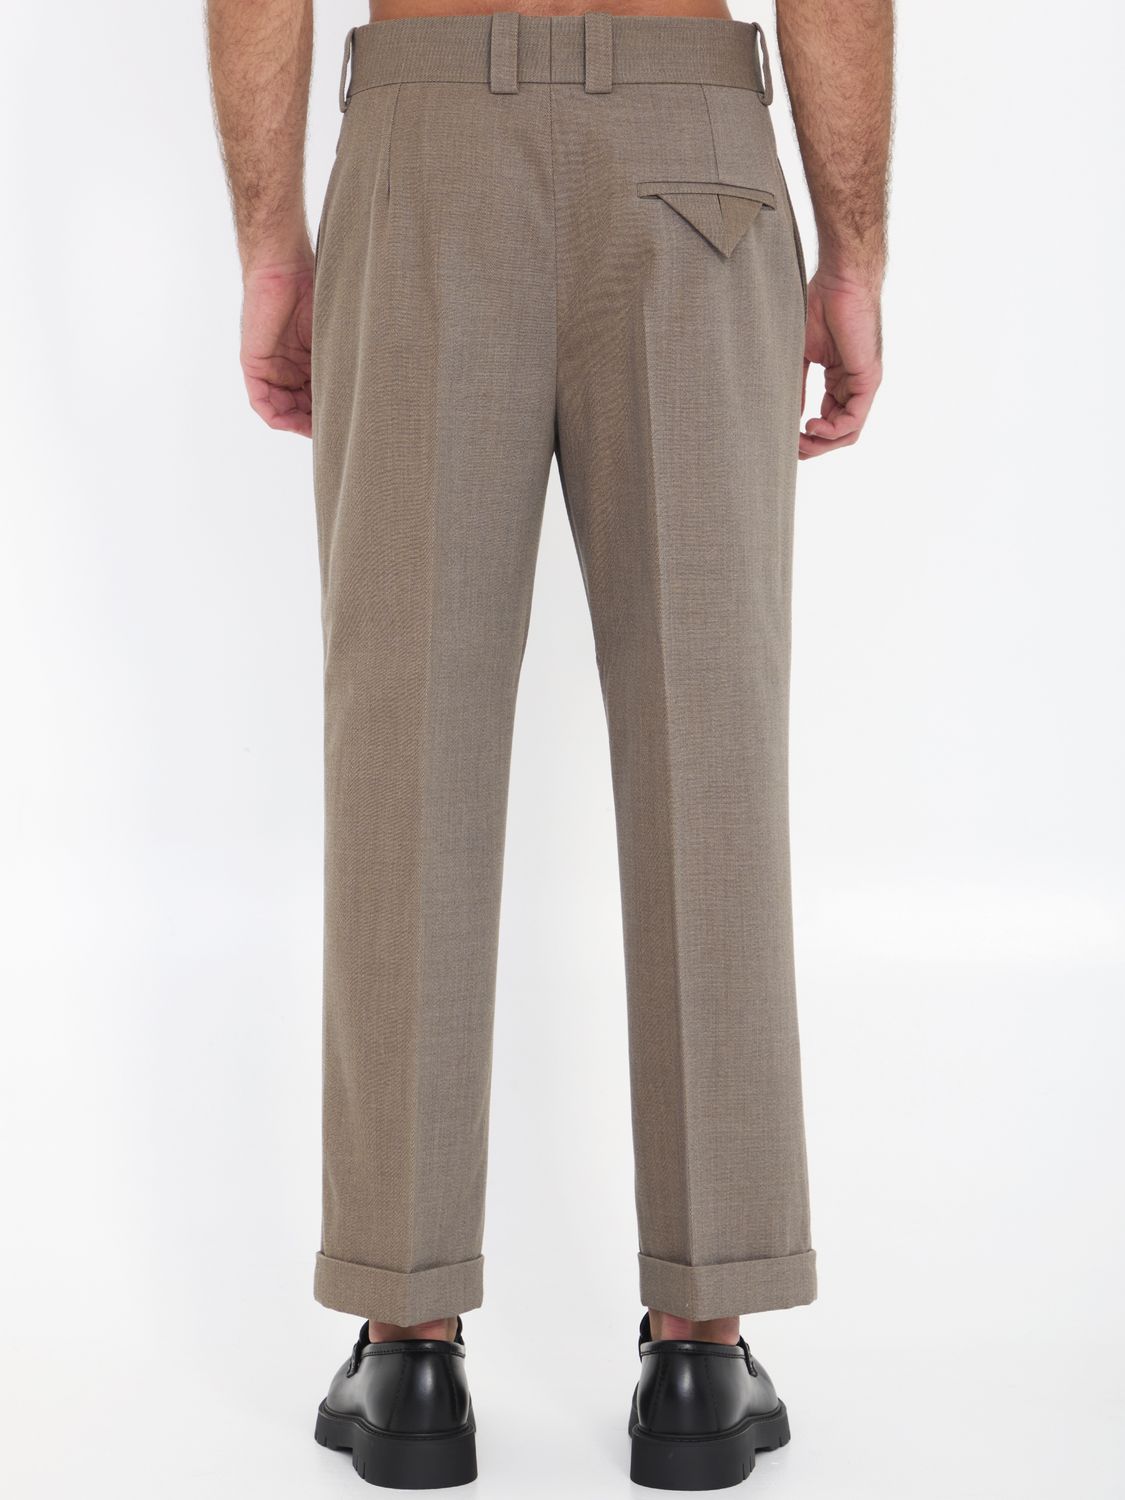 BOTTEGA VENETA Men's Straight-Leg Wool Twill Trousers in Grey/Ochre Melange